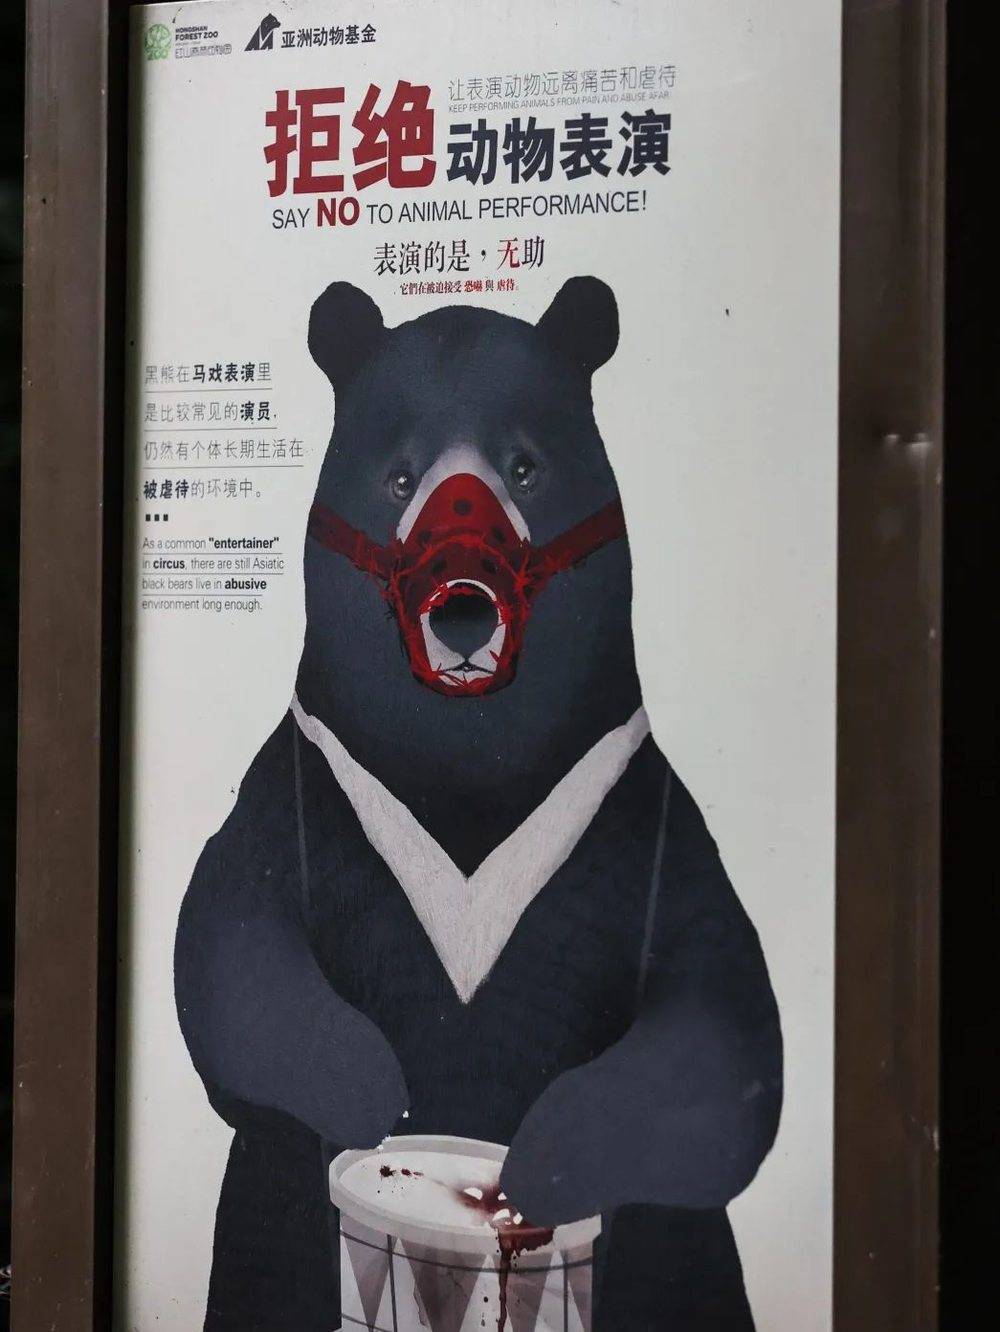 南京红山森林动物园内拒绝动物表演的宣传海报。@SayaNeko<br>